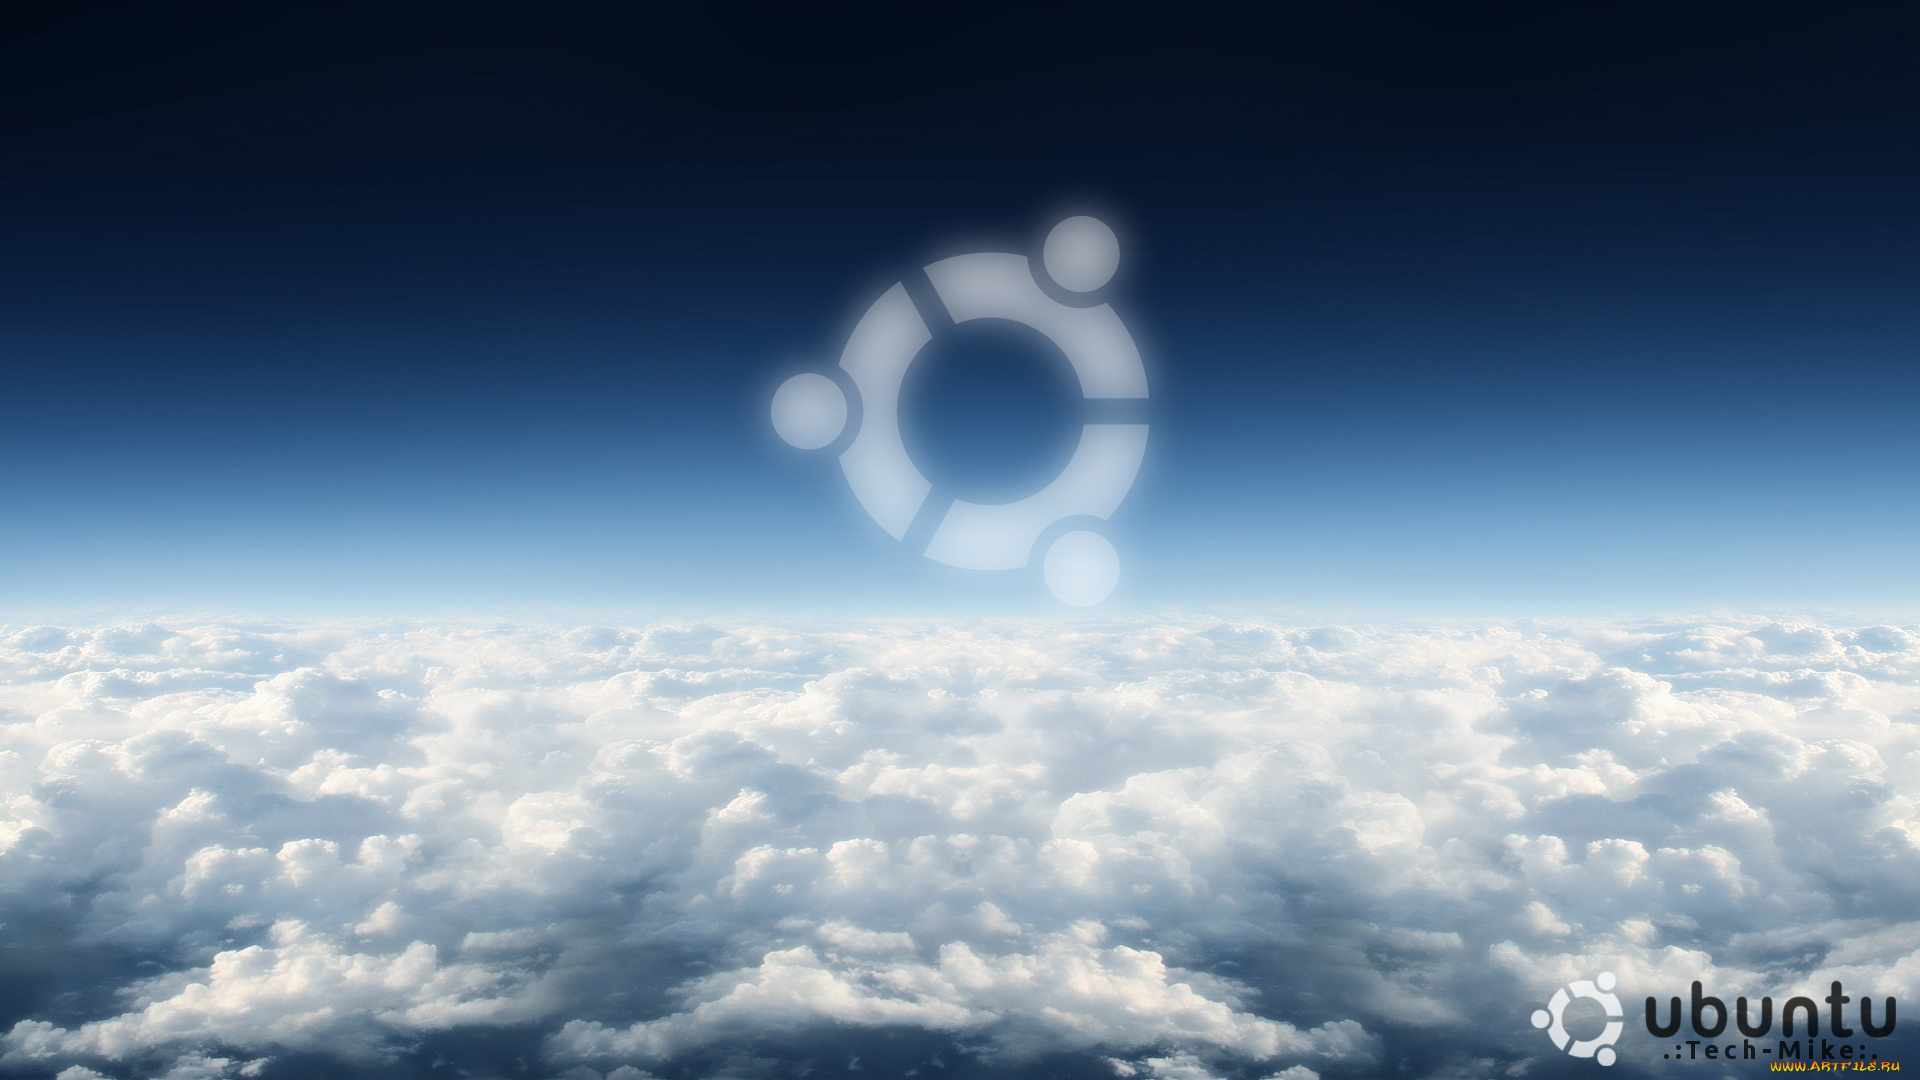 компьютеры, ubuntu, linux, логотип, облака